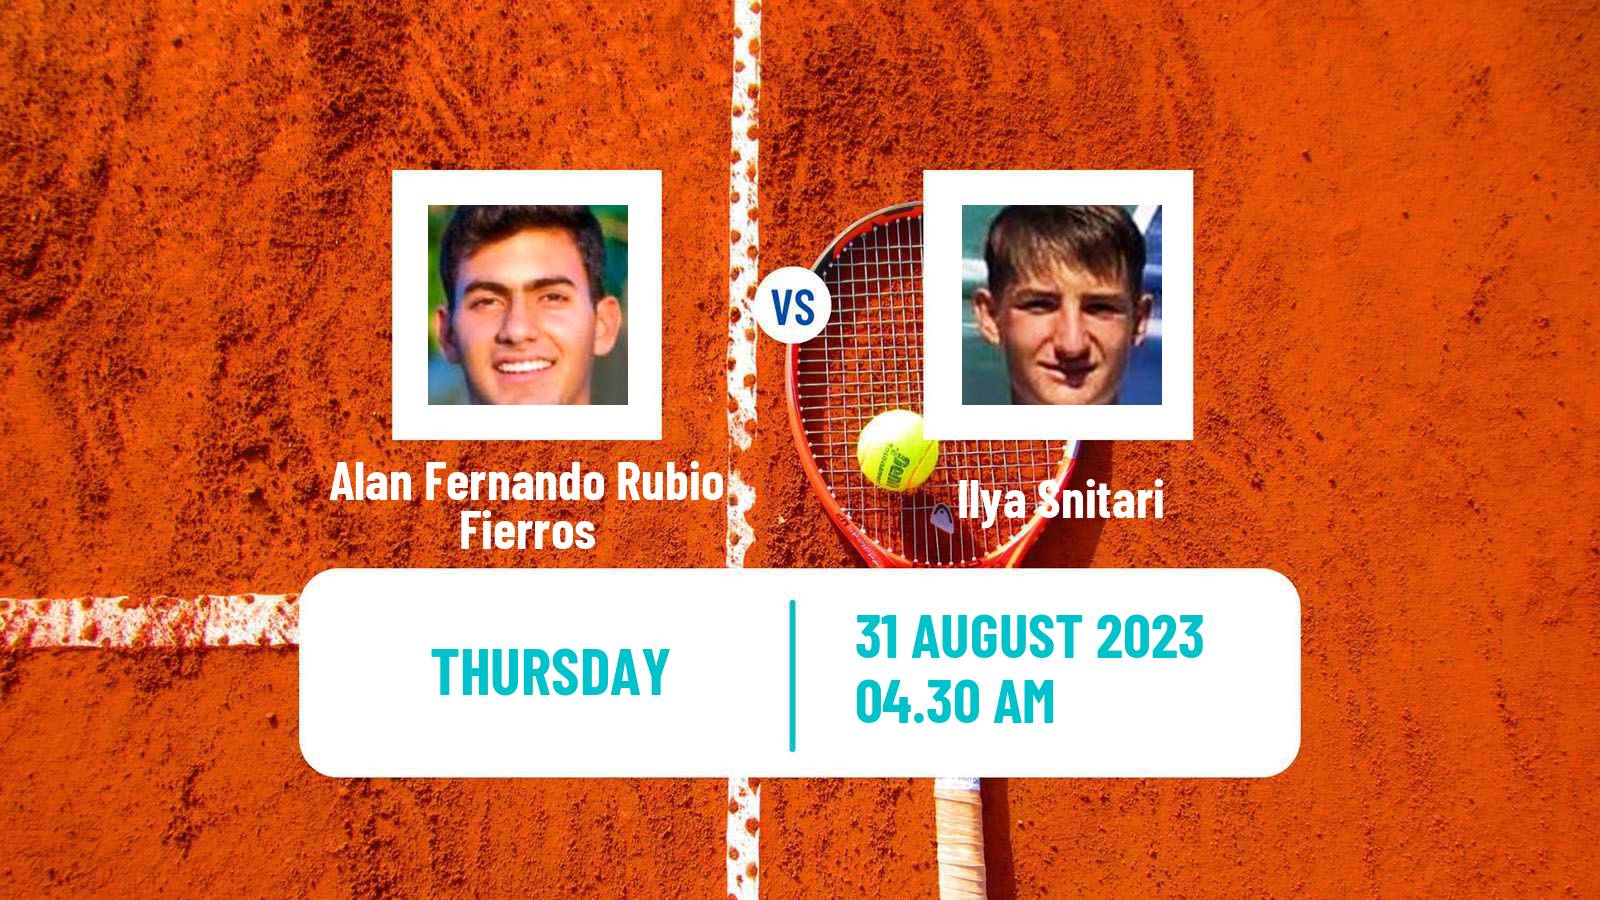 Tennis ITF M15 Monastir 35 Men Alan Fernando Rubio Fierros - Ilya Snitari